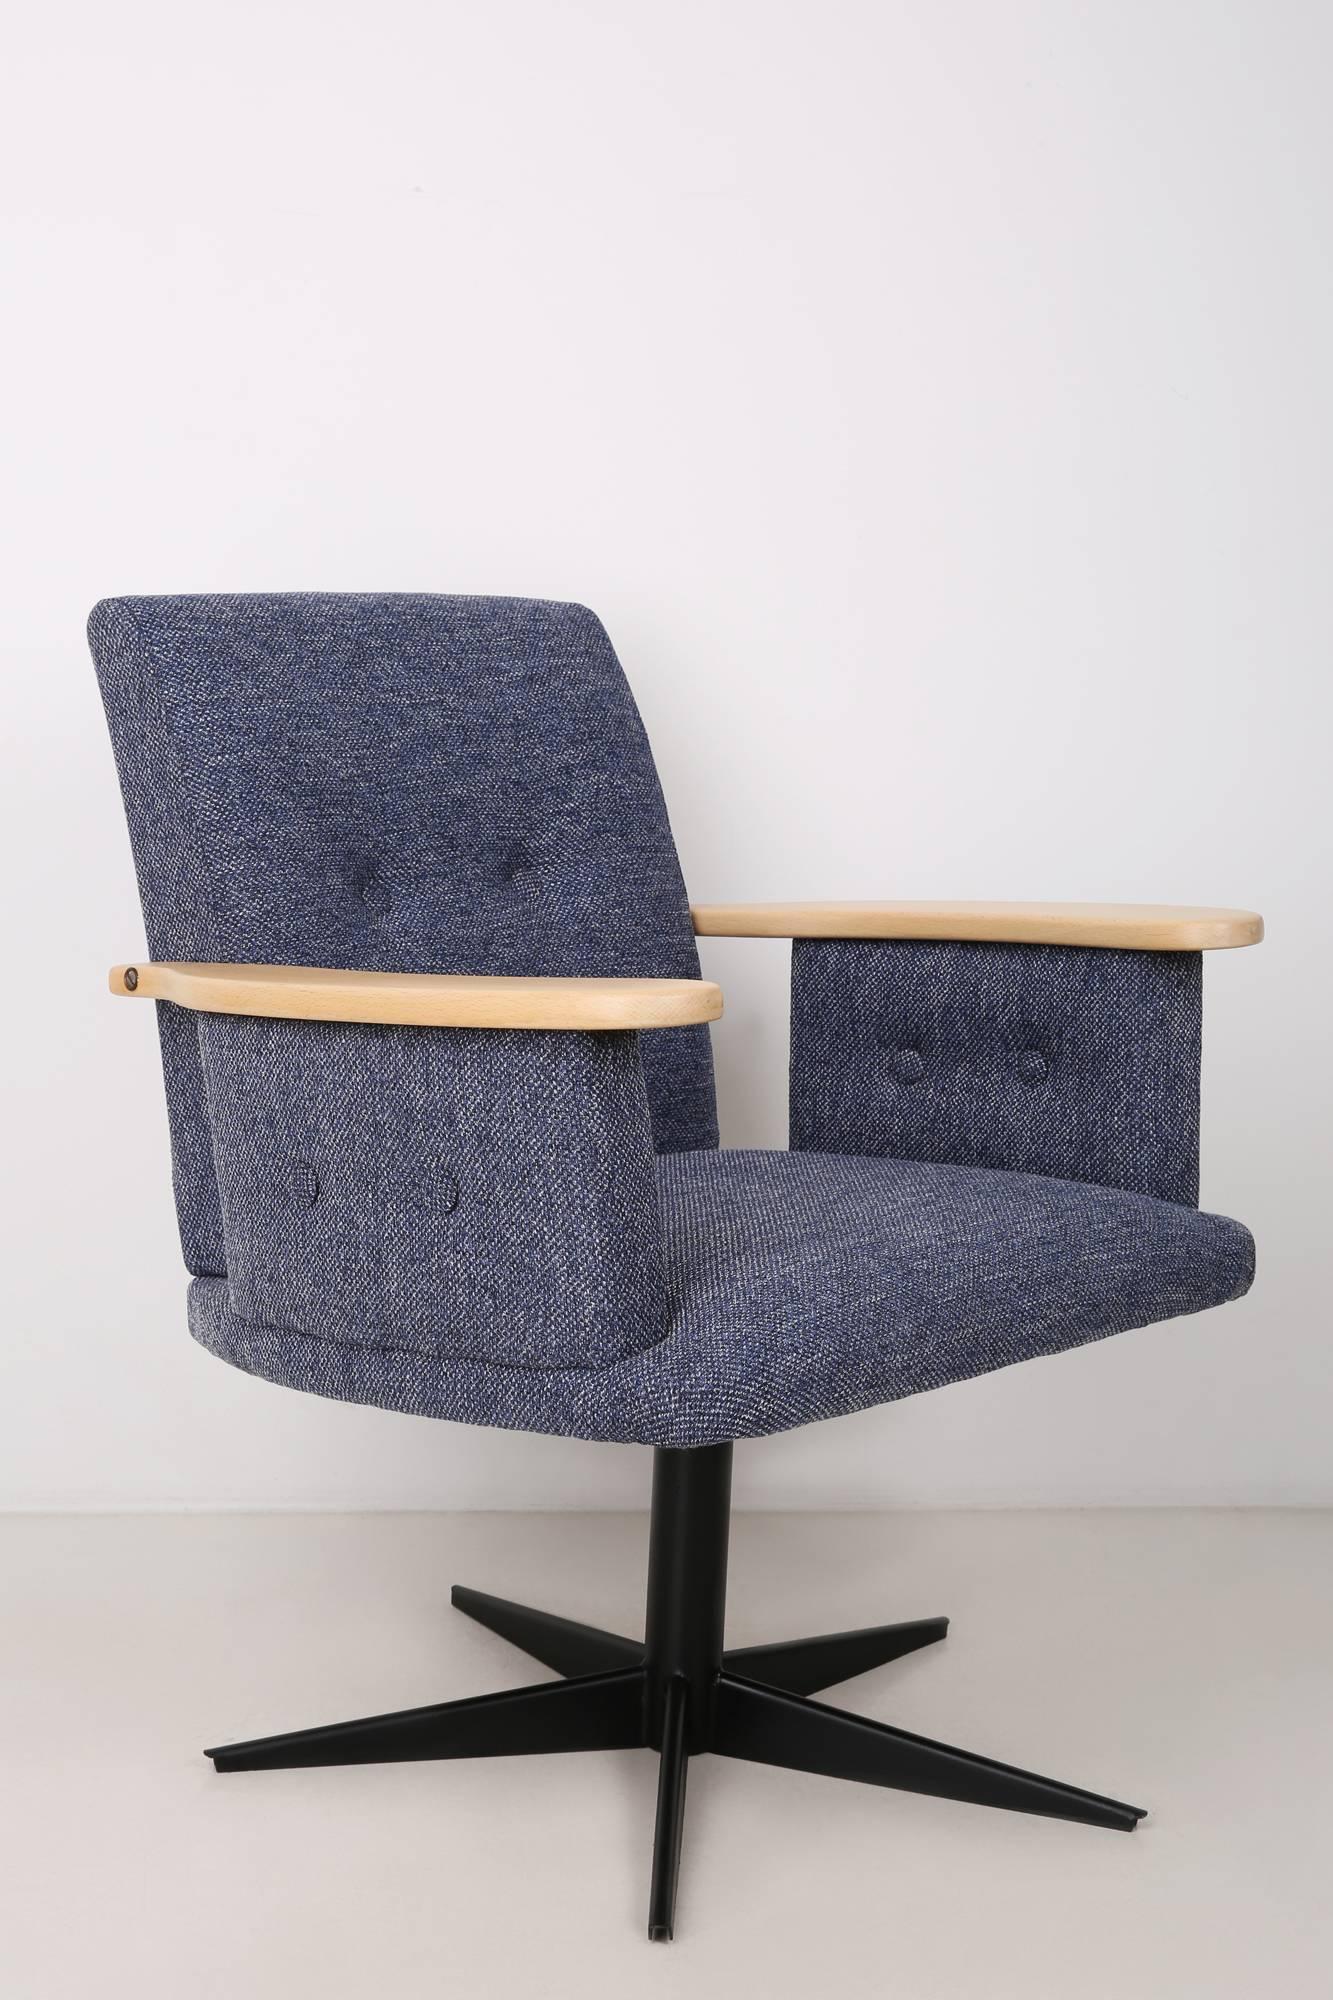 Drehsessel aus den 1960er Jahren, hergestellt in der schlesischen Möbelfabrik in Swiebodzin, absolut origineller und einzigartiger Sessel.

Der Sessel wurde einer gründlichen Renovierung unterzogen:
- Metallelemente wurden geschliffen und mit